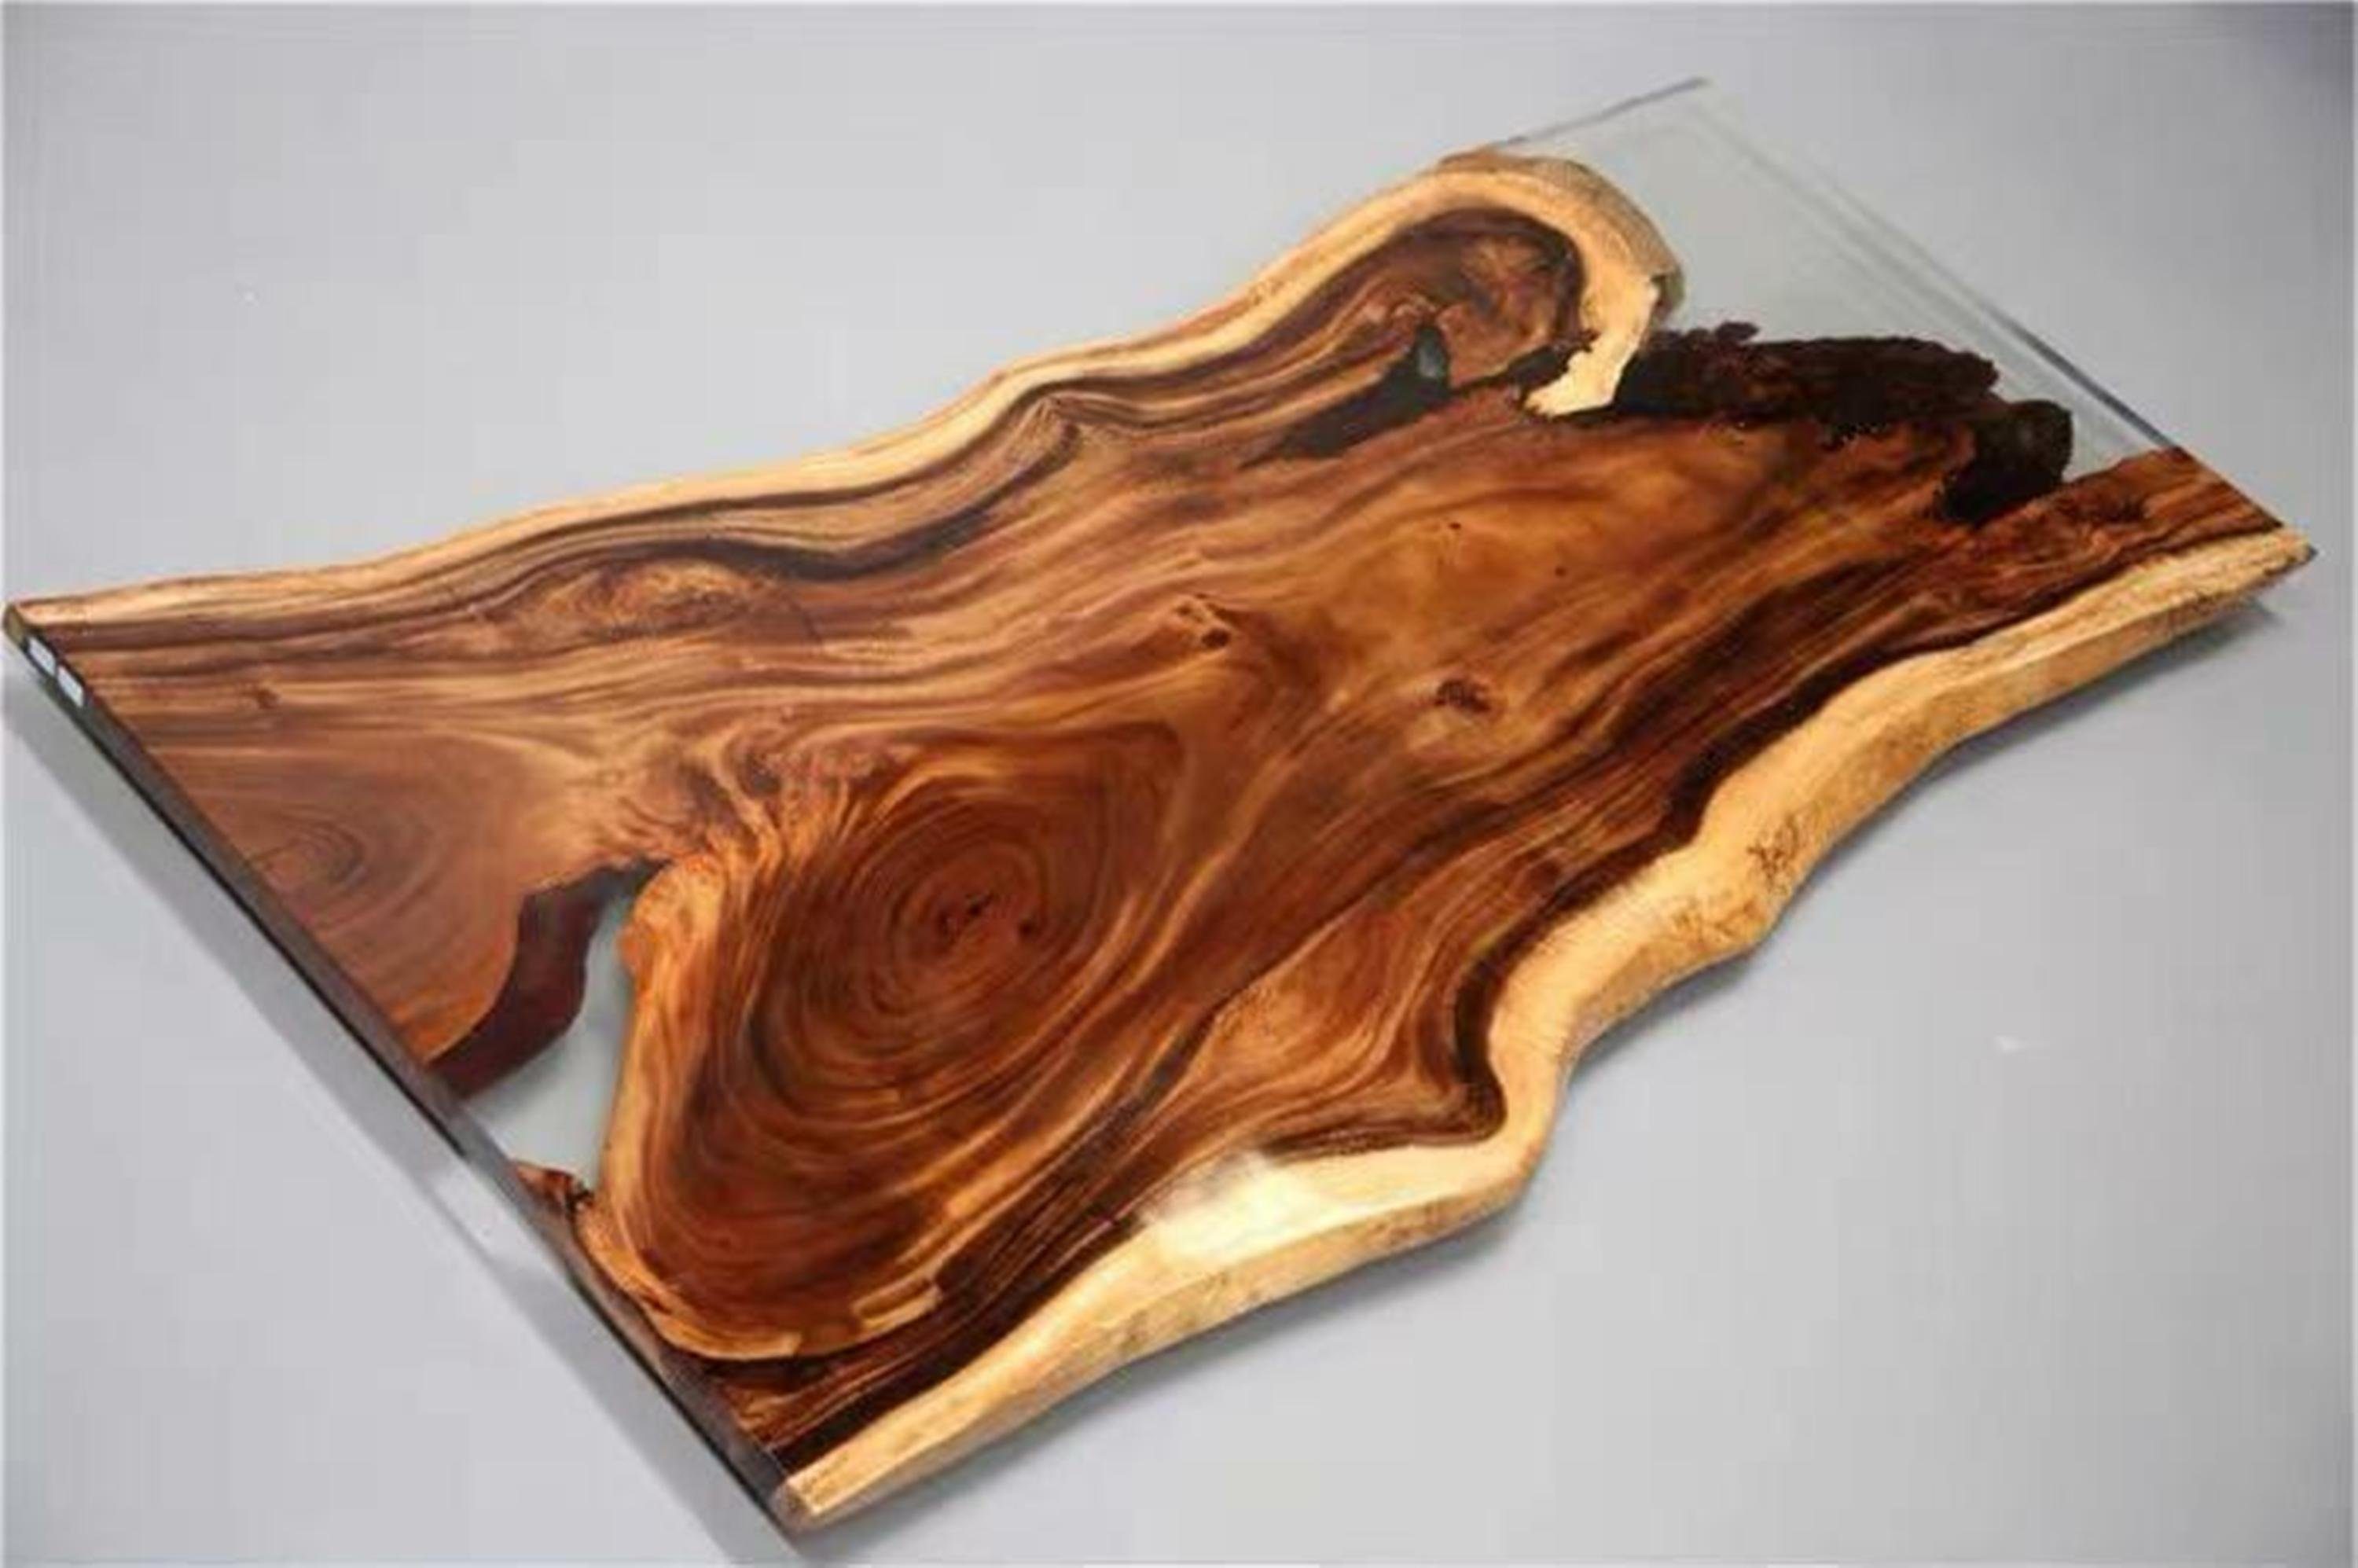 200x90 Holz Echtes Esstisch Massiv Table River JVmoebel Esstisch, Epoxidharz Tische